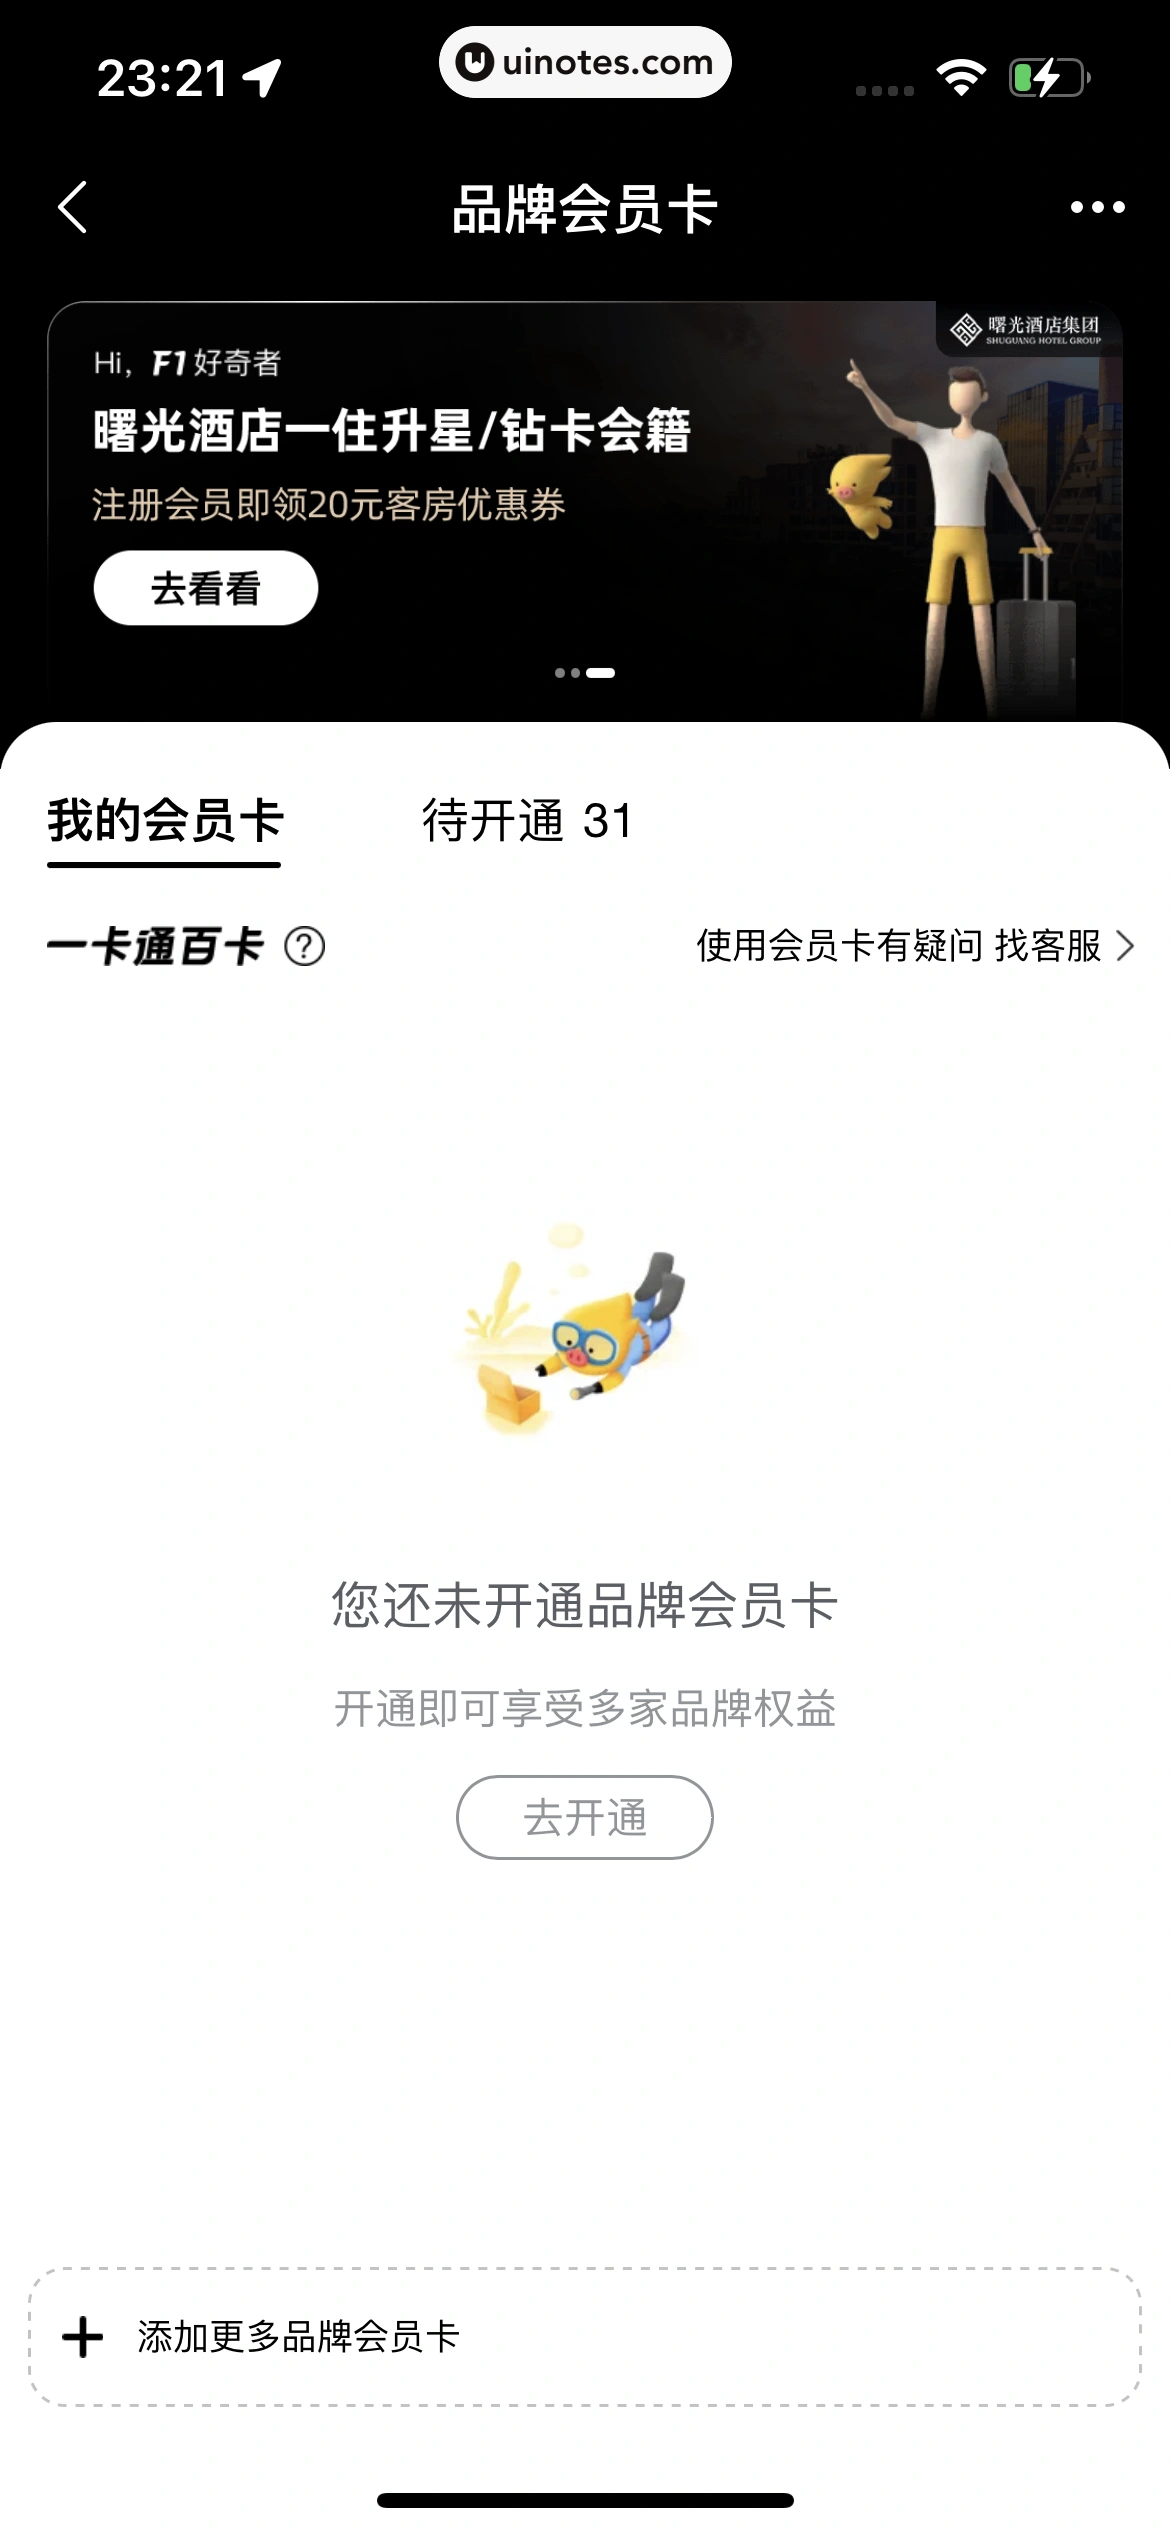 飞猪旅行 App 截图 860 - UI Notes